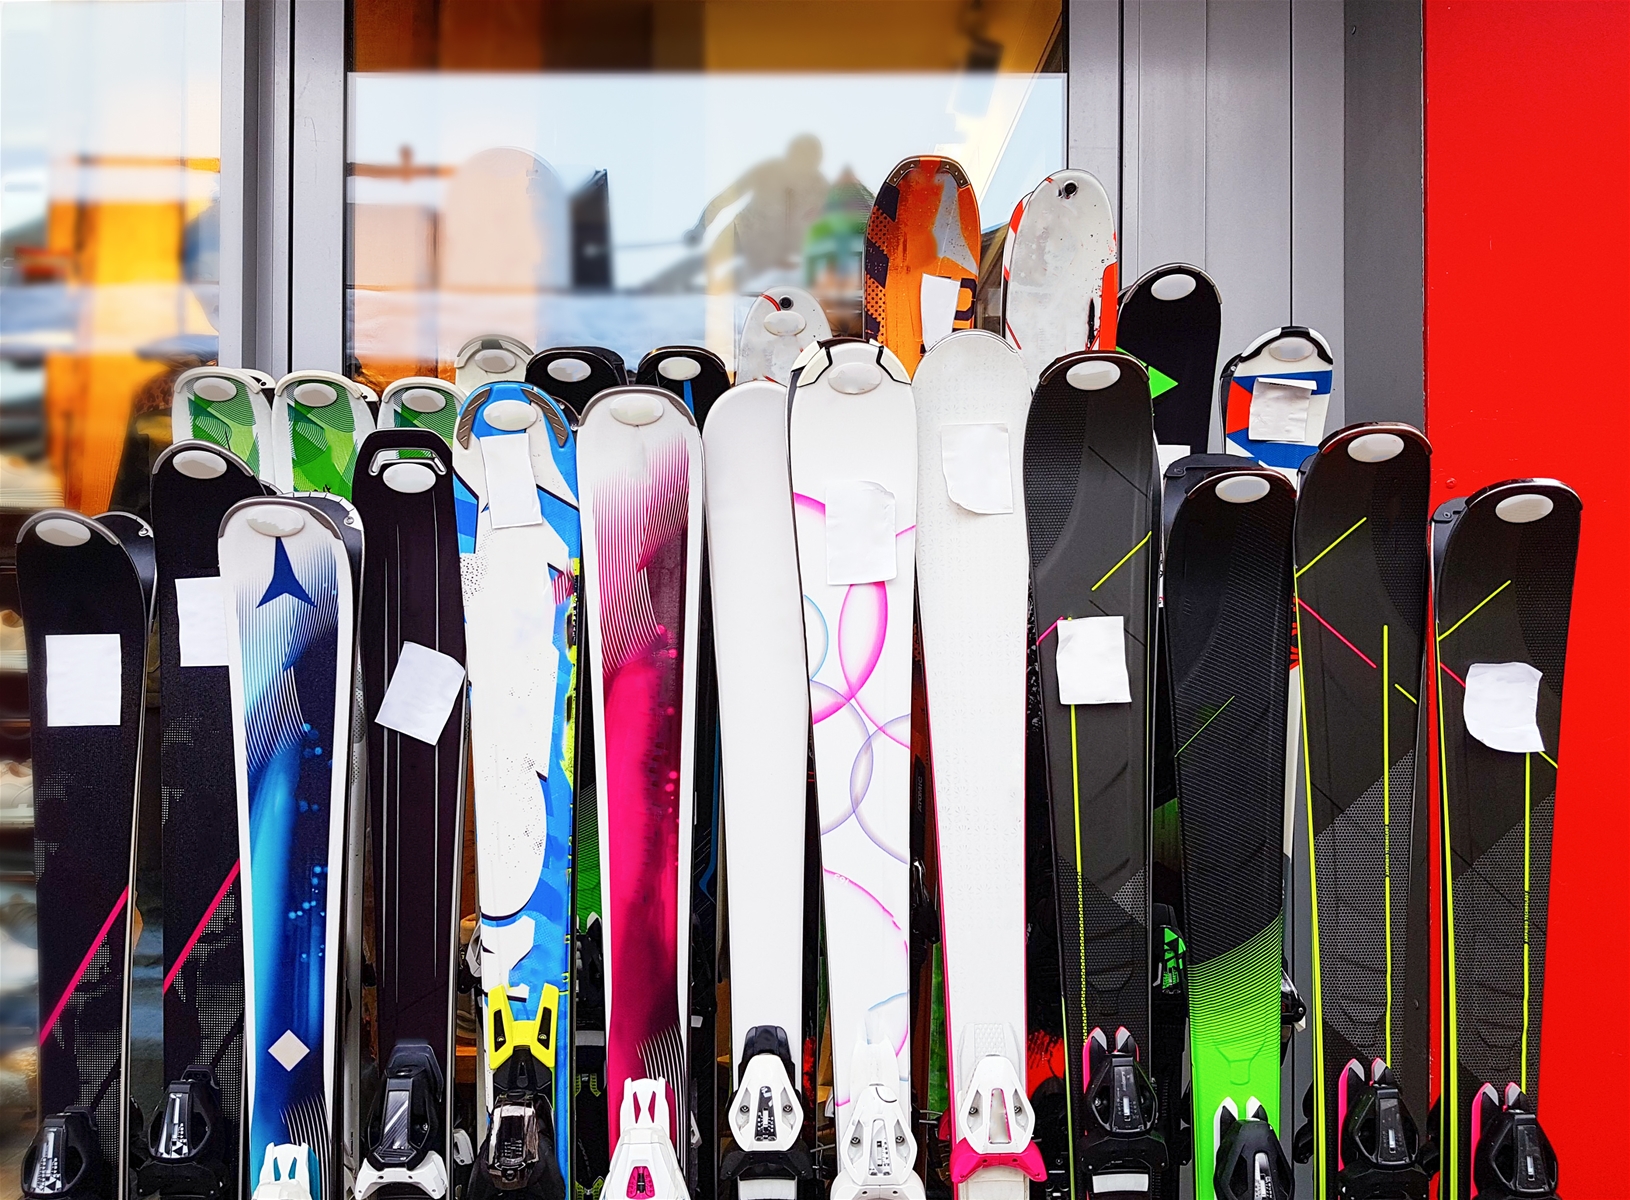 Skis In Ski Rental Shop